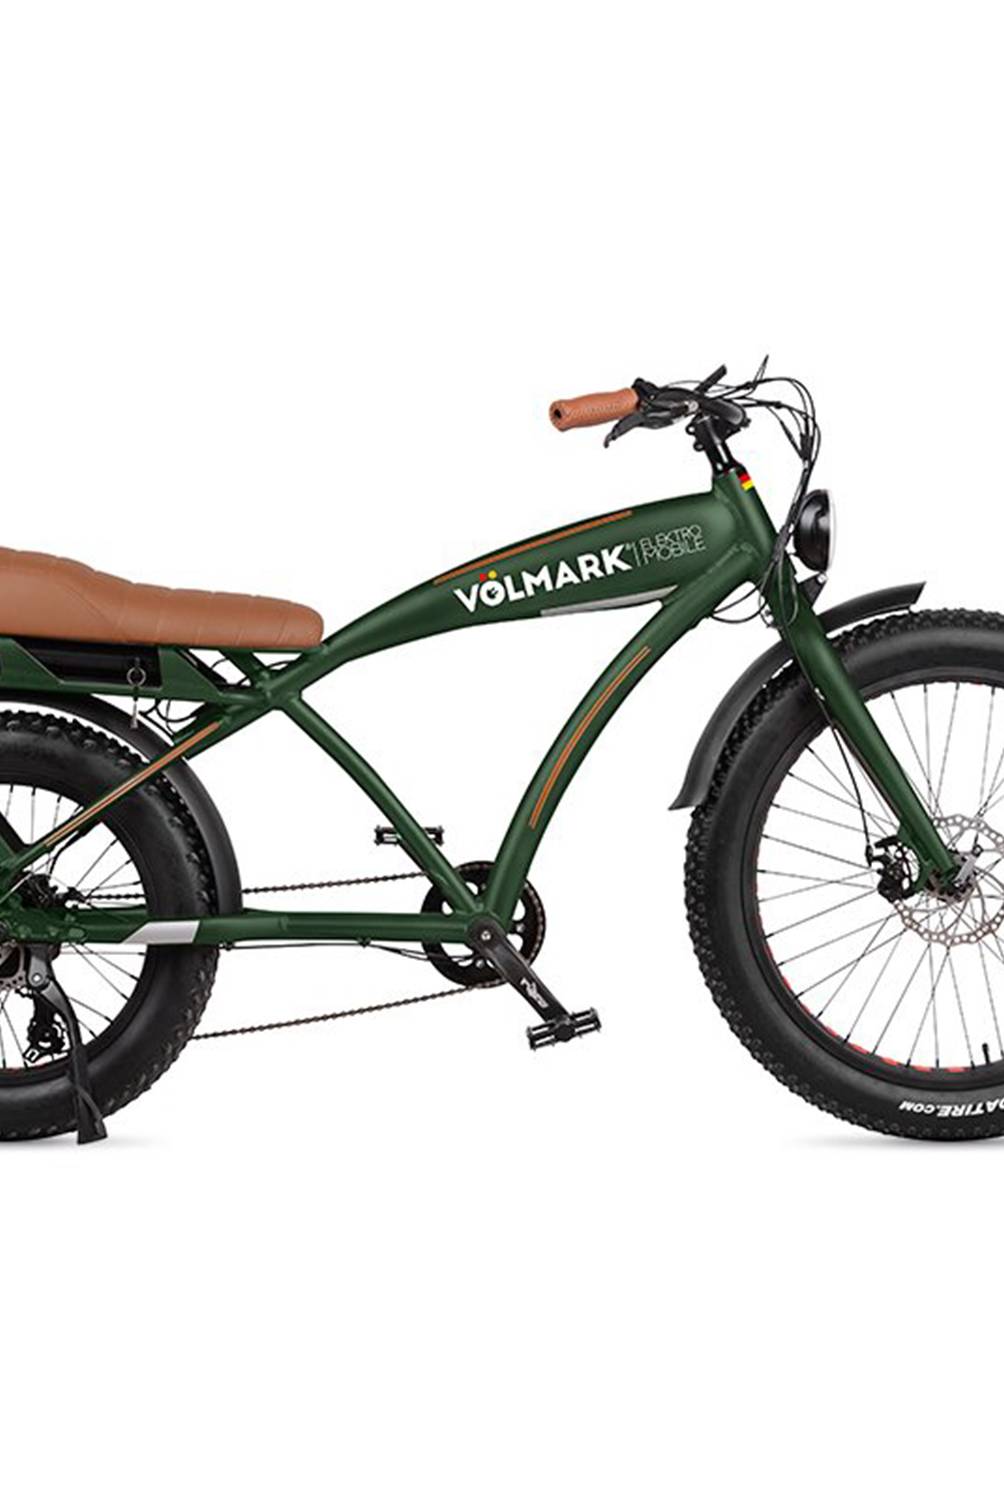 VOLMARK - Bicicleta Eléctrica Modelo Chopper